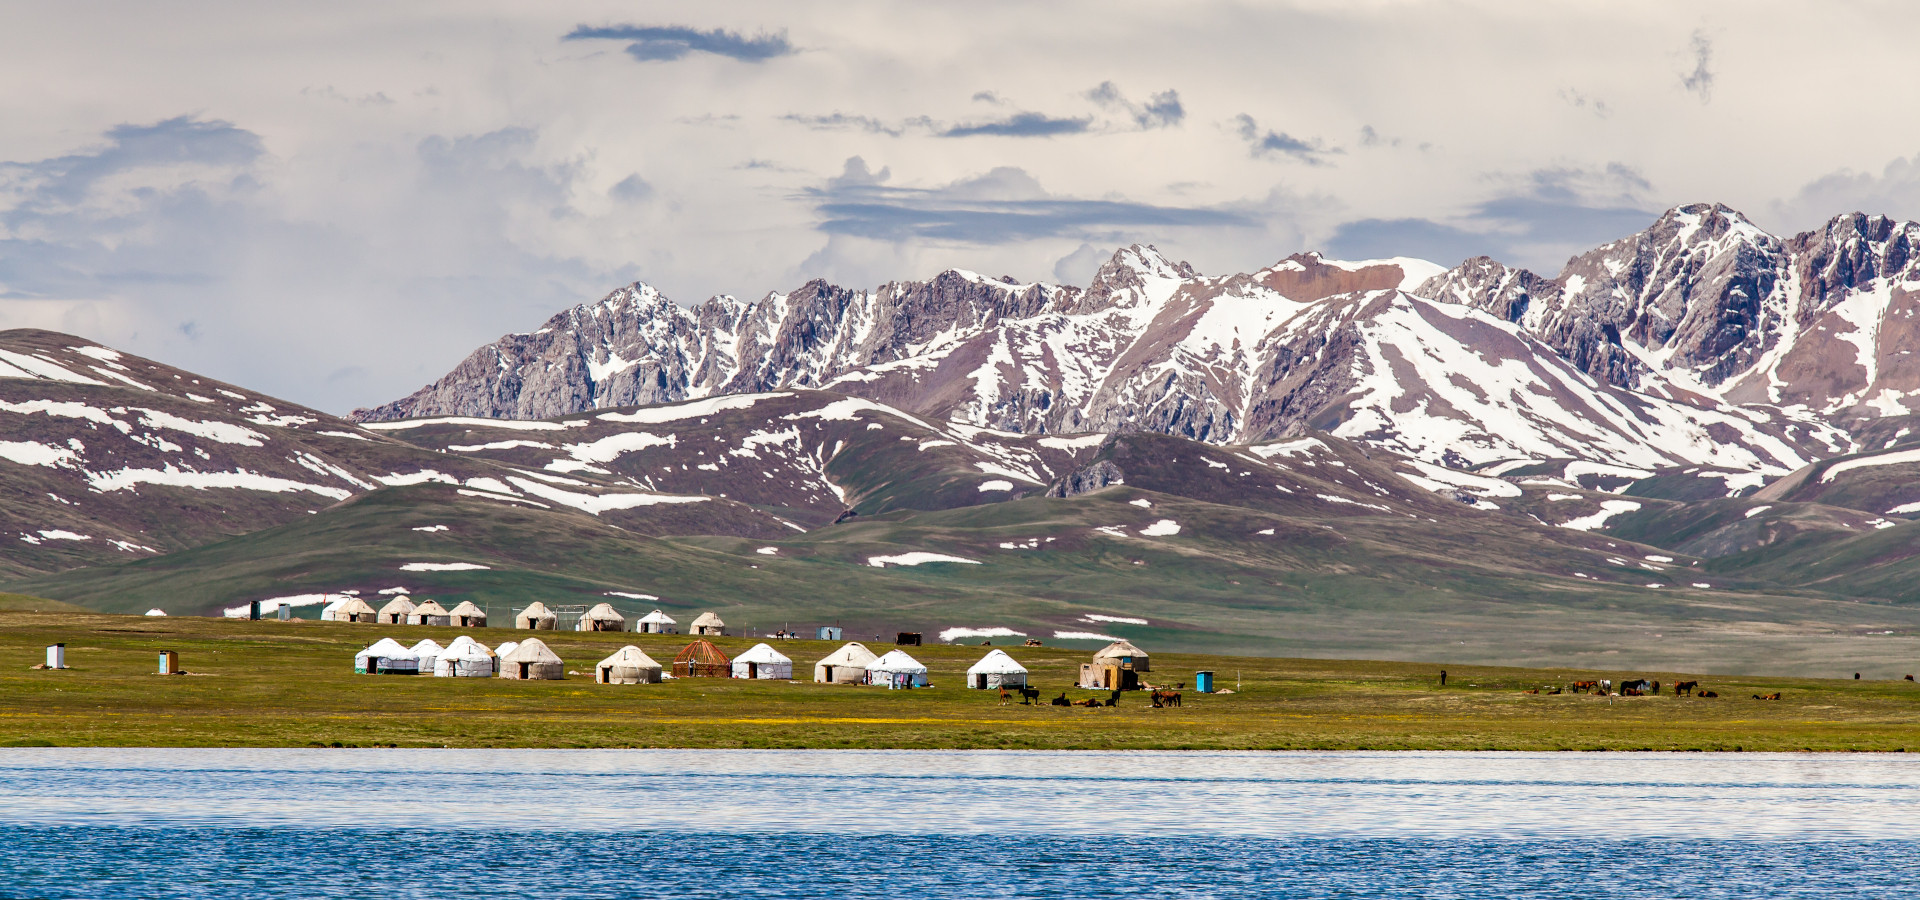 Kirgisische Jurten am Song Kul - Hochgebirgsee im Tian Shan-Gebirge in Kirgisistan